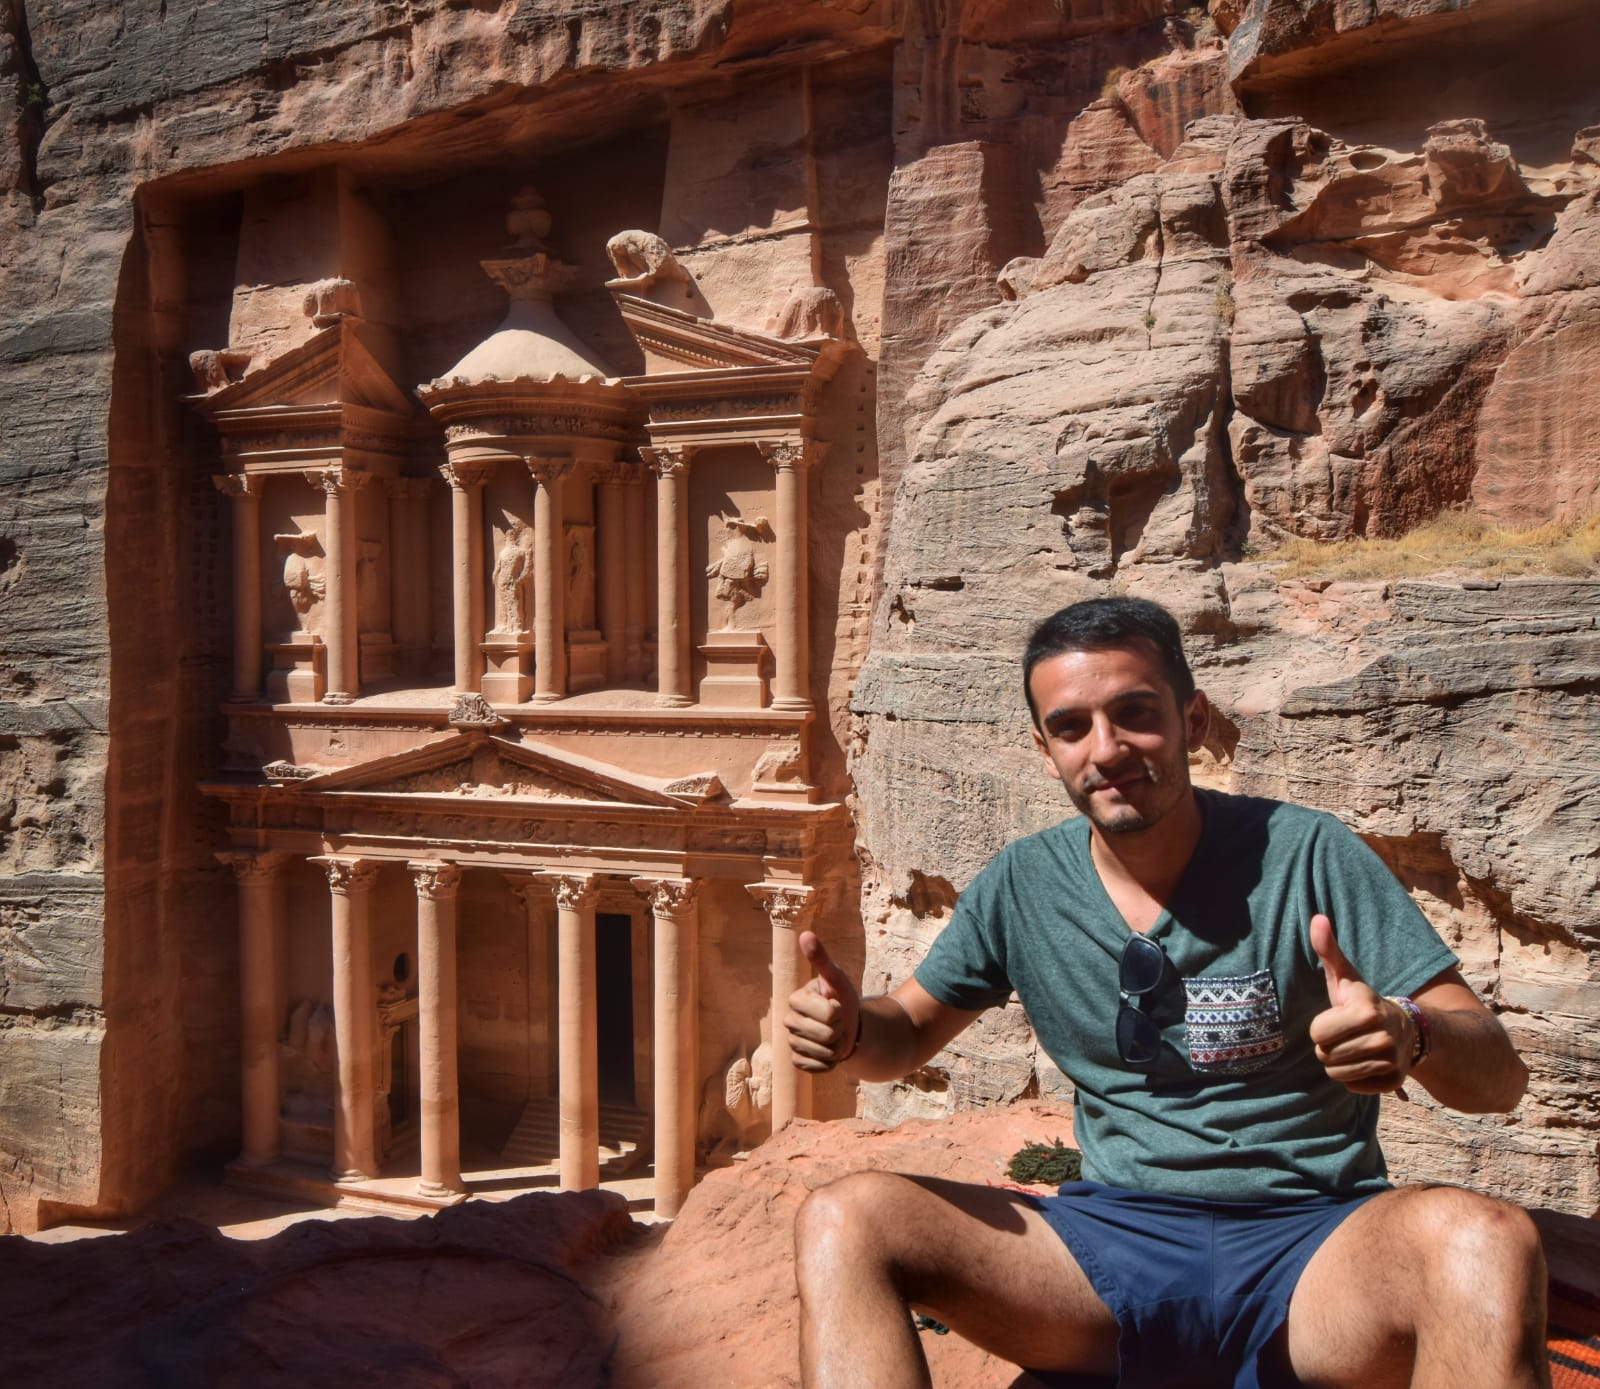 La ciudad de Petra, Jordania